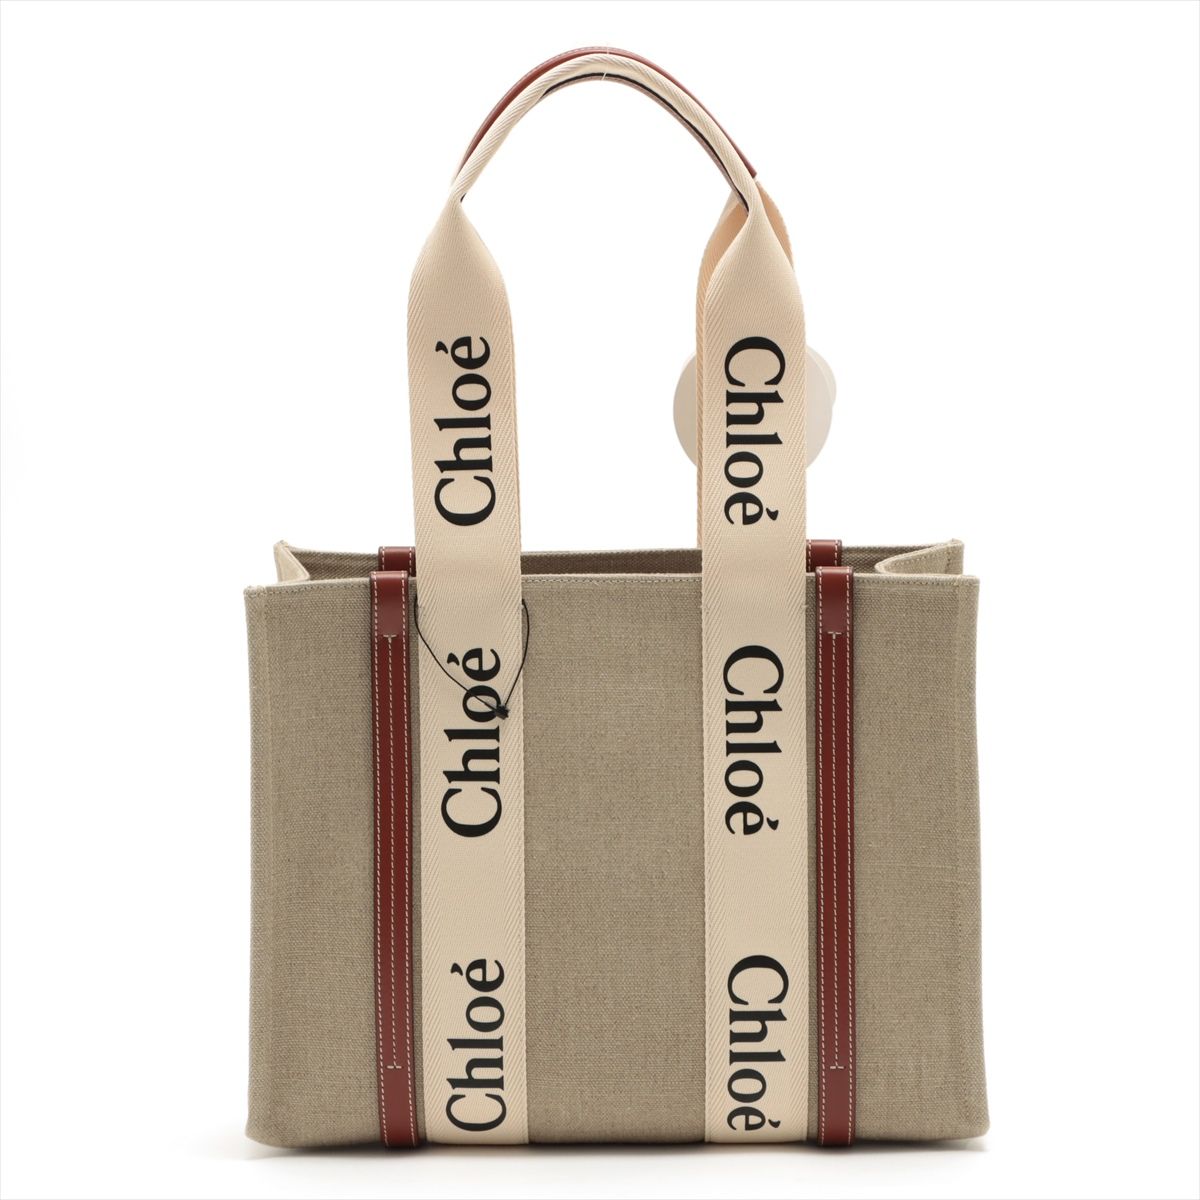 CHLOE Chloe Woody Tote Bag Medium in Brown Leather & Linen - Vault 55